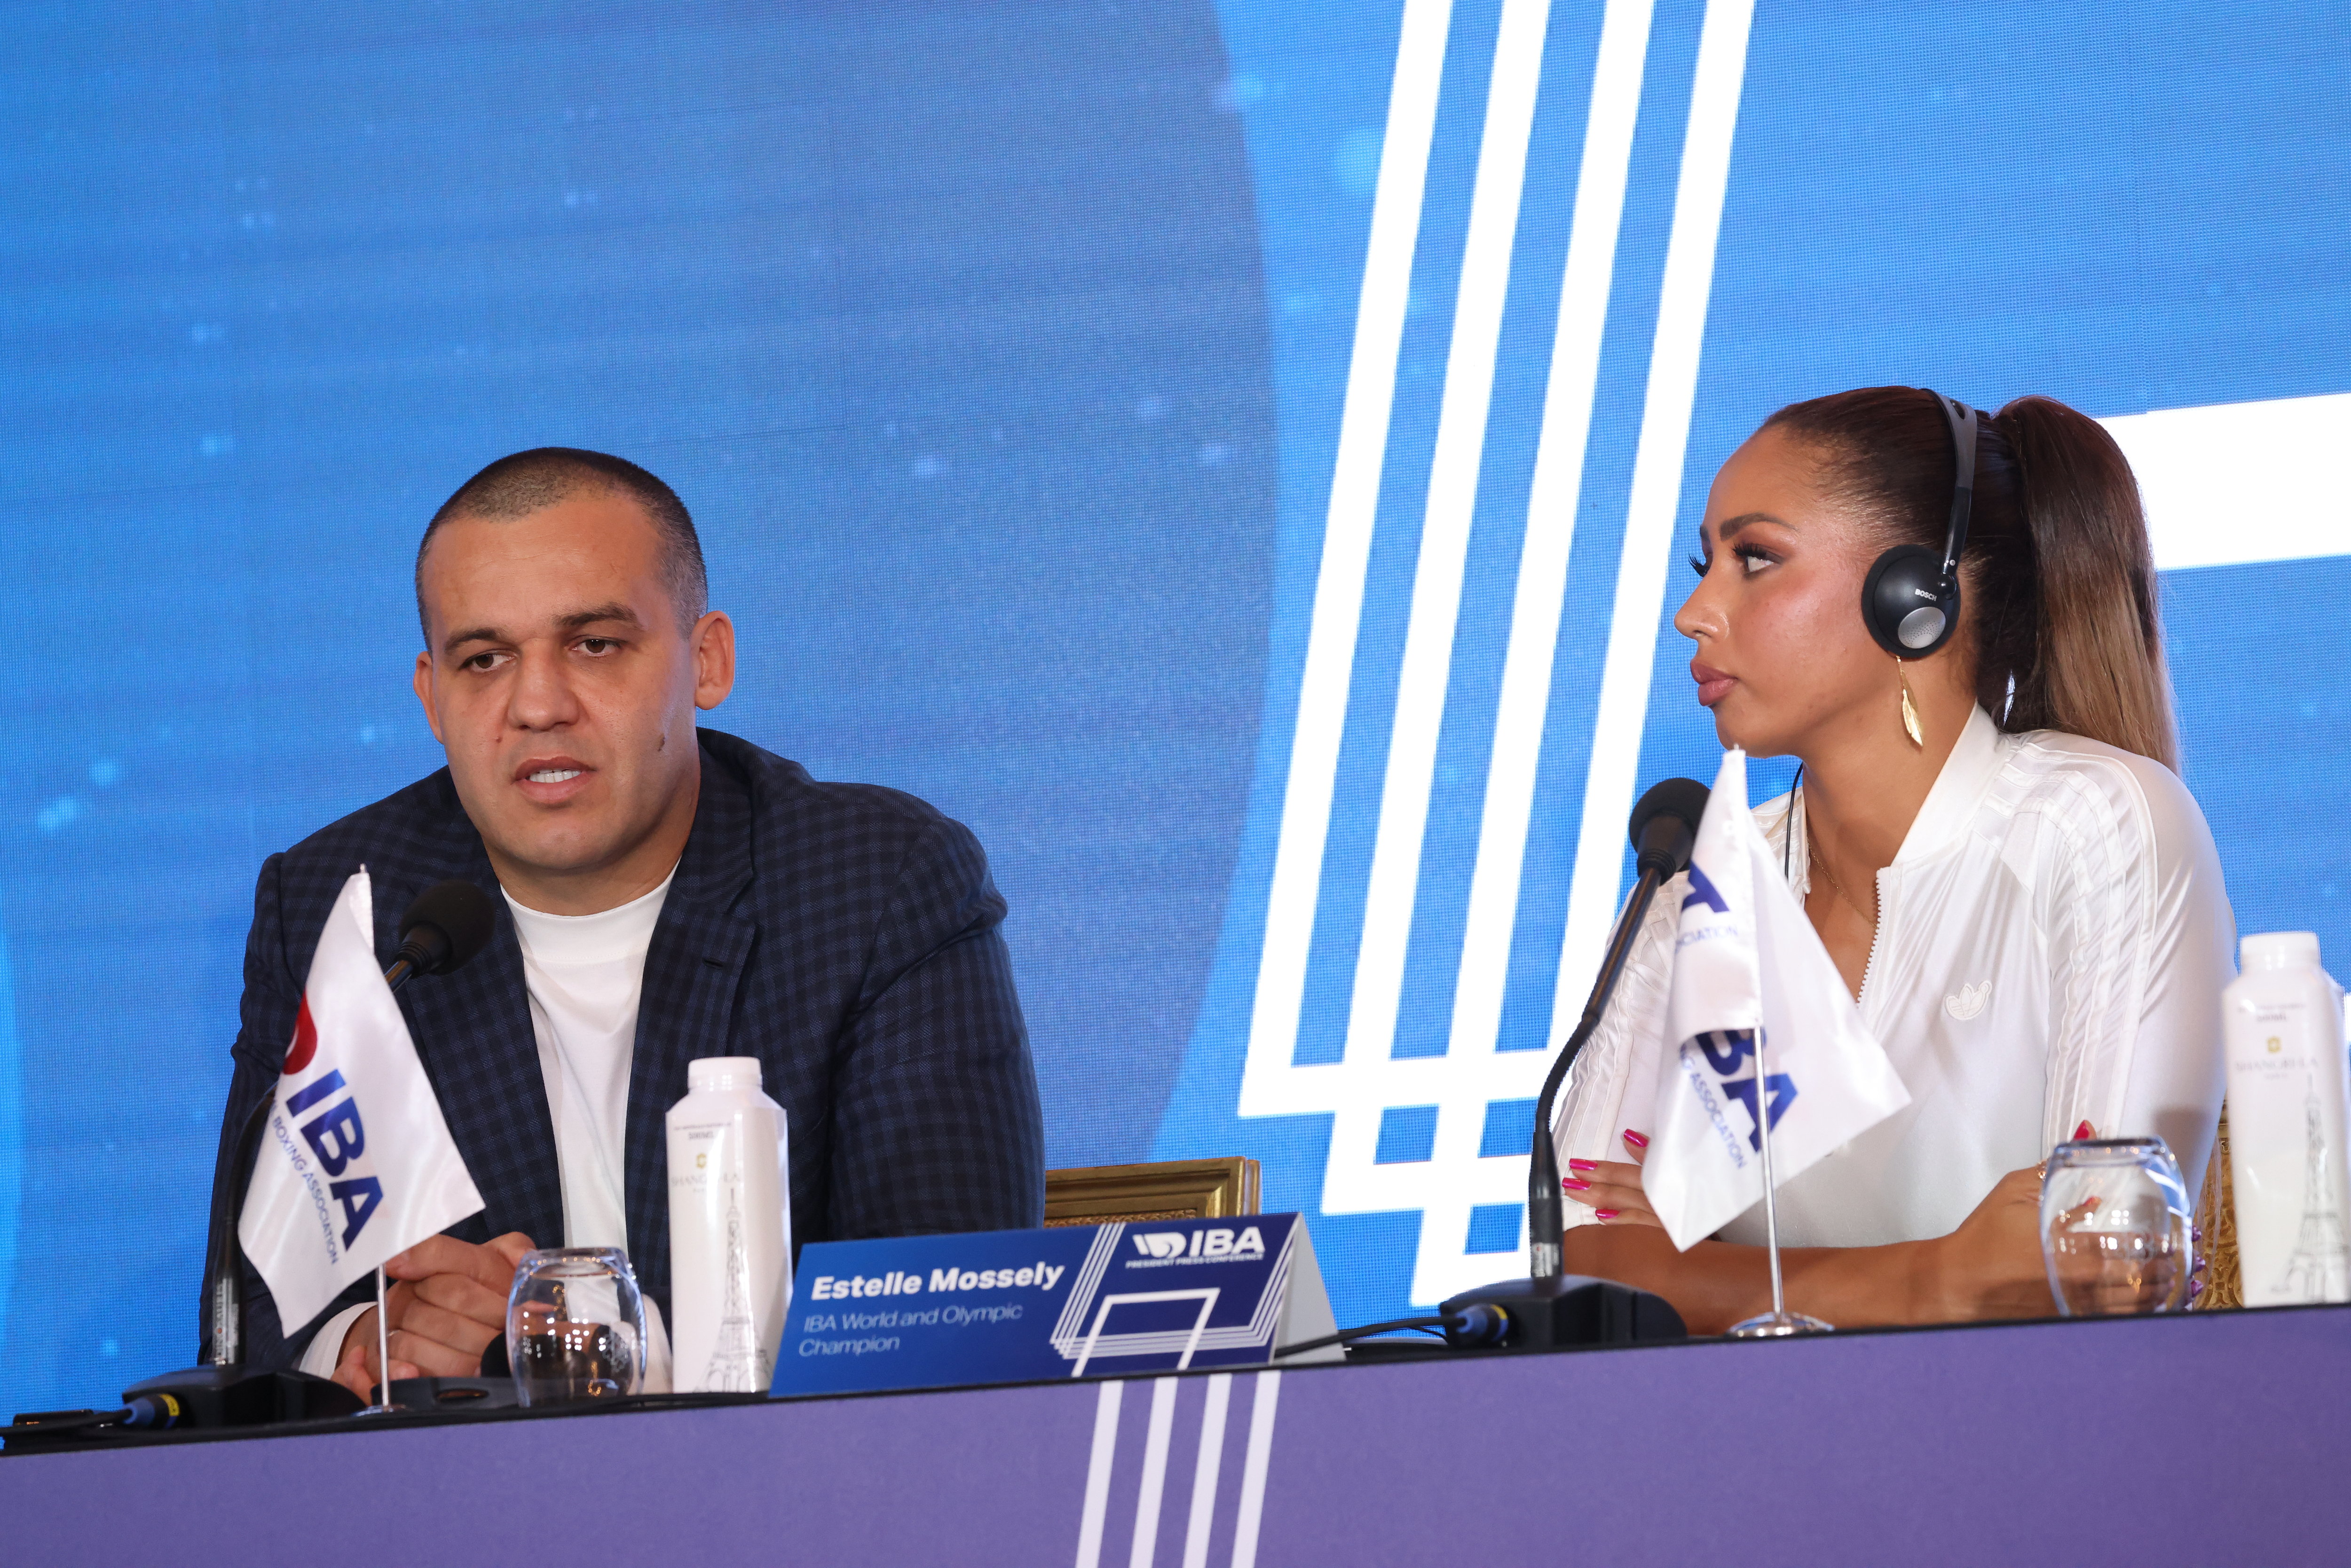 Le président de la Fédération internationale de boxe Umar Kremlev ce jeudi à Paris, avec Estelle Mossely, championne olympique en 2016 et ambassadrice de l'IBA. LP/Olivier Lejeune